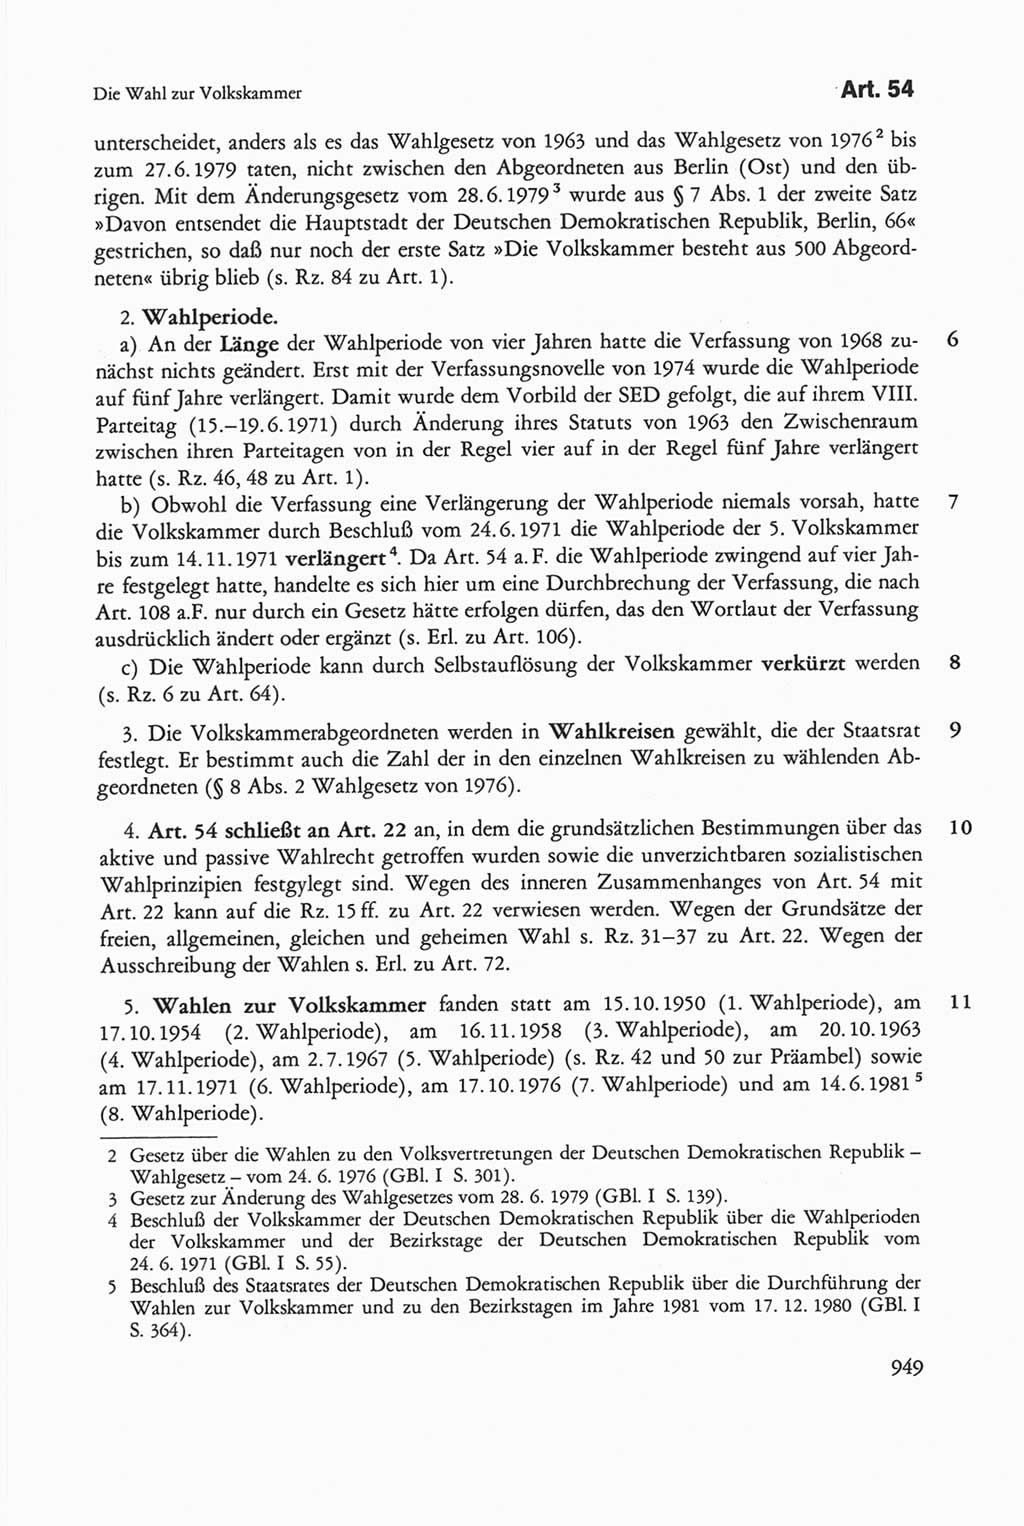 Die sozialistische Verfassung der Deutschen Demokratischen Republik (DDR), Kommentar 1982, Seite 949 (Soz. Verf. DDR Komm. 1982, S. 949)